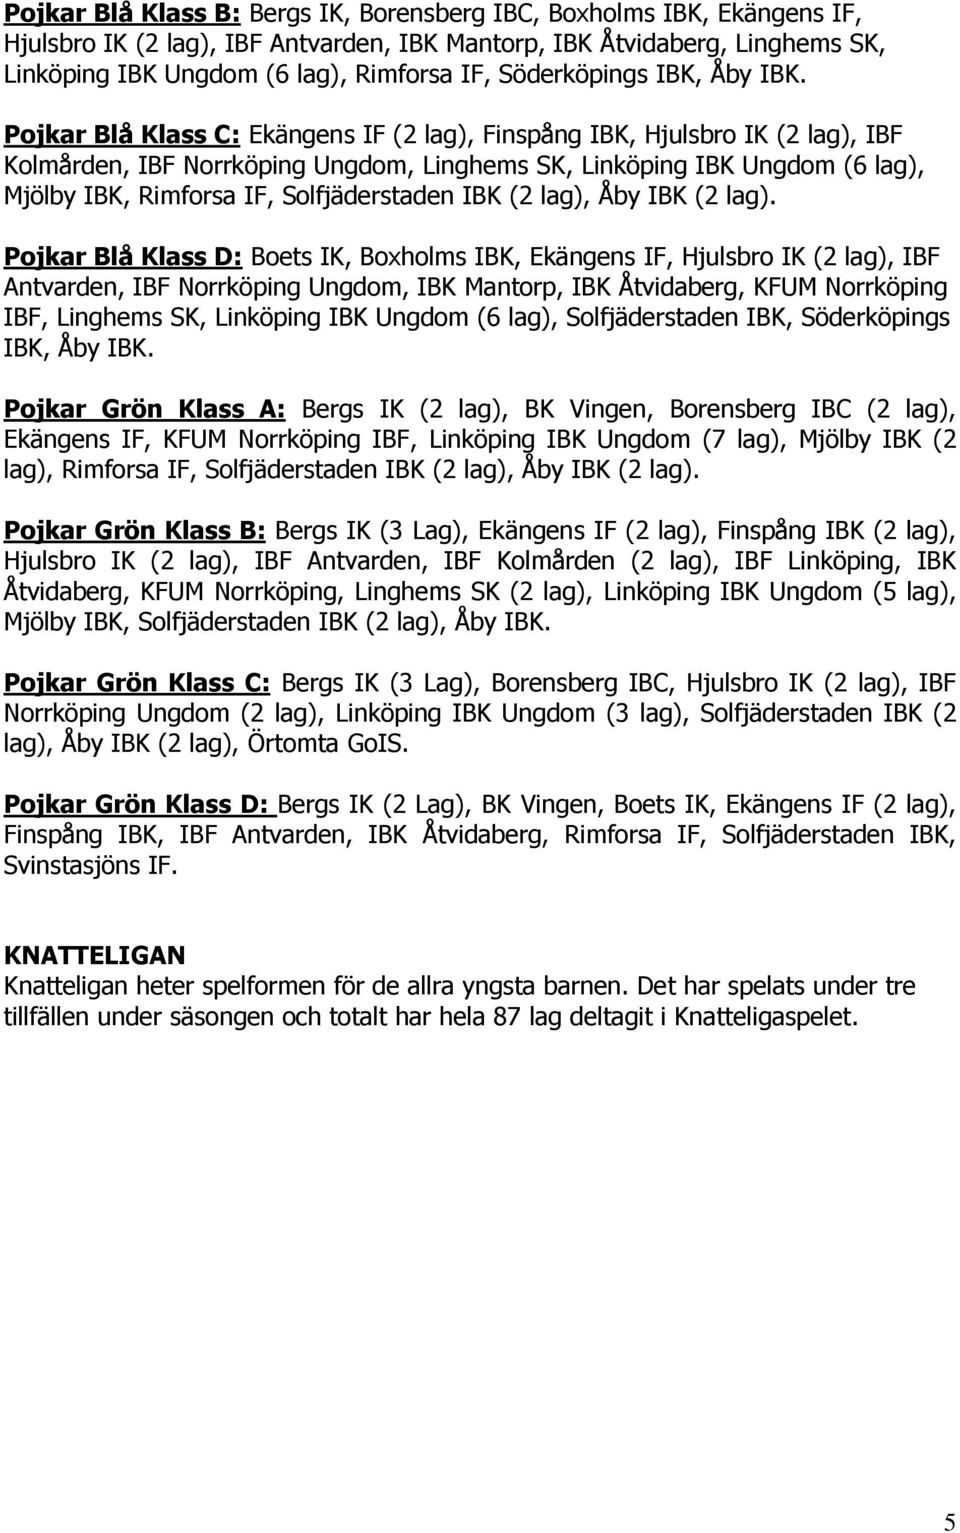 Pojkar Blå Klass C: Ekängens IF (2 lag), Finspång IBK, Hjulsbro IK (2 lag), IBF Kolmården, IBF Norrköping Ungdom, Linghems SK, Linköping IBK Ungdom (6 lag), Mjölby IBK, Rimforsa IF, Solfjäderstaden